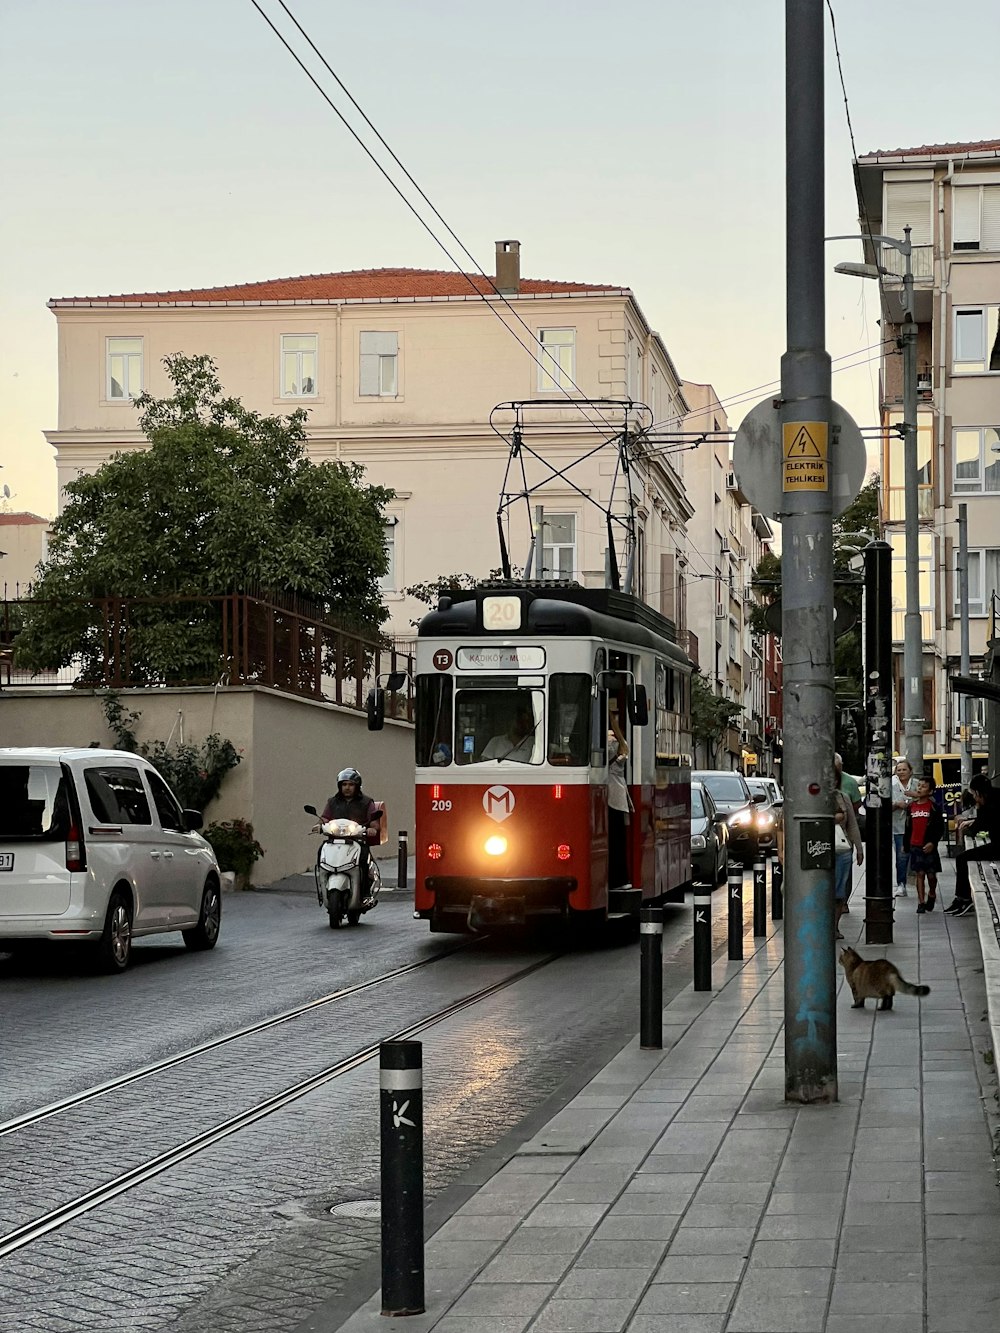 Un train rouge et blanc circulant dans une rue à côté de grands immeubles